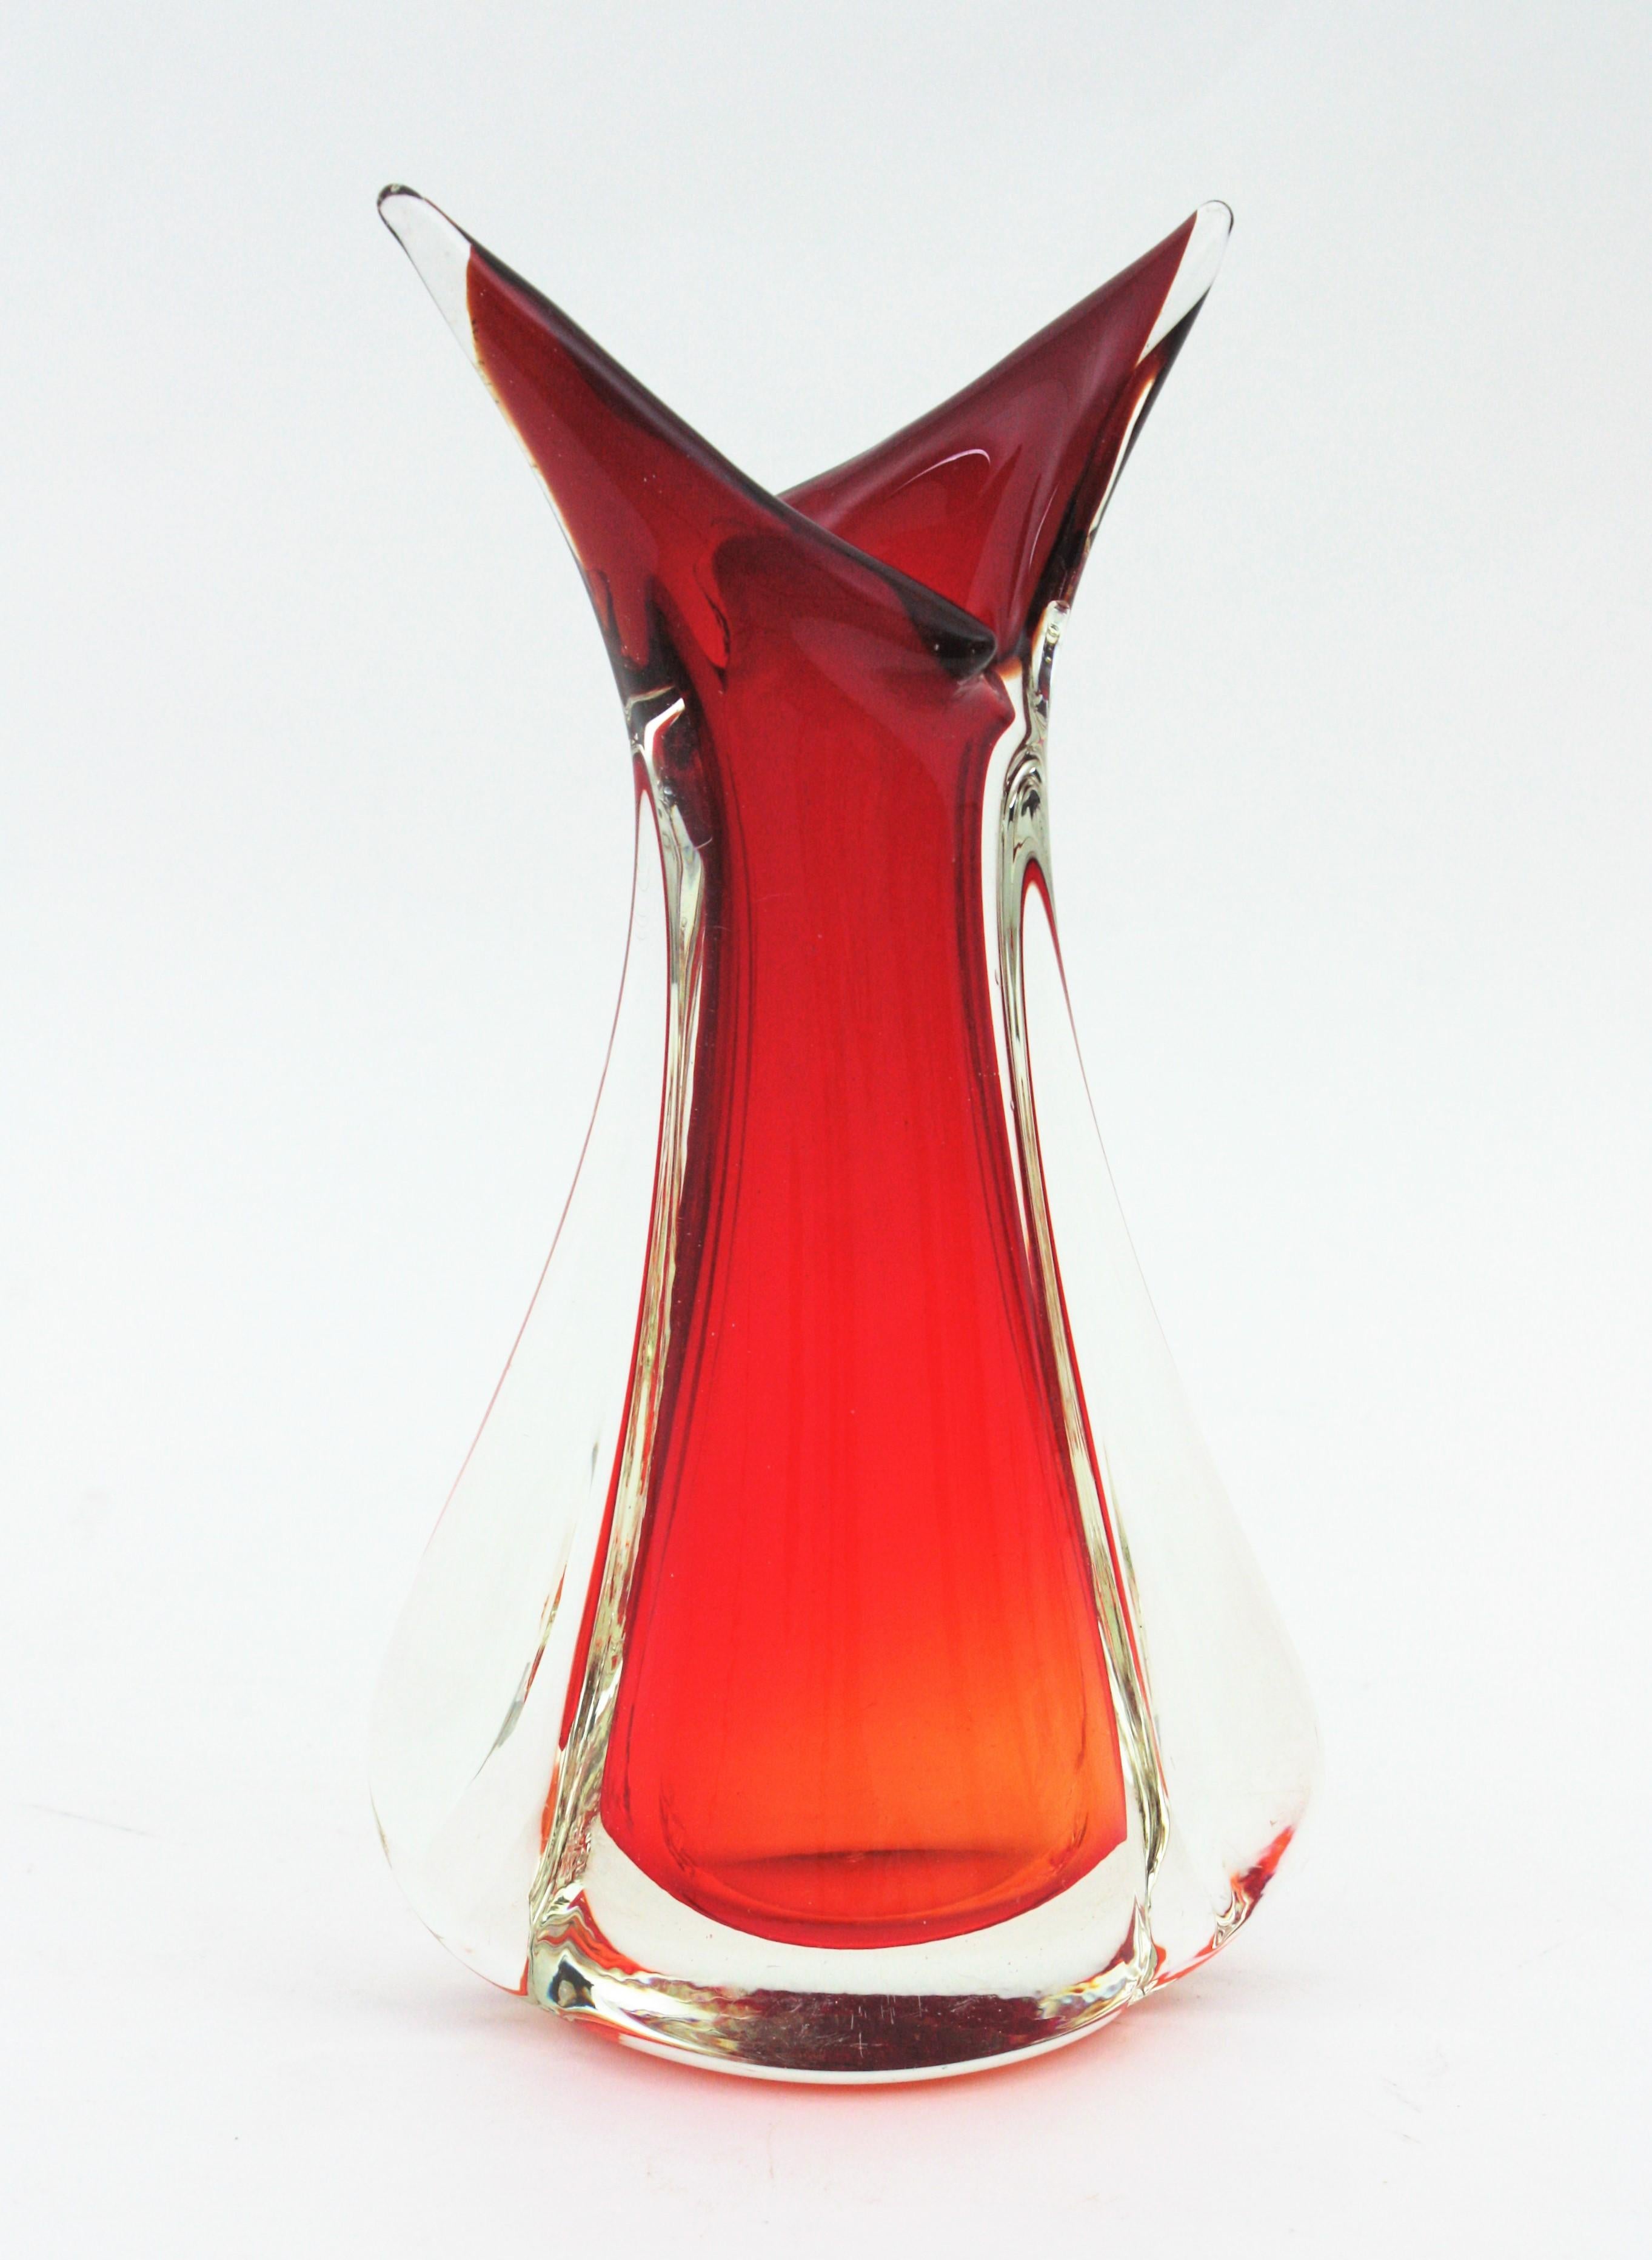 Skulpturale Vase aus Murano-Kunstglas in Rot- und Orange-Tönen. Entworfen von Flavio Poli und hergestellt von Seguso Vetri d'Arte. Italien, 1950er Jahre.
Lebendige Farben: Rotes und orangefarbenes Glas, das mit der Sommerso-Technik in klares Glas